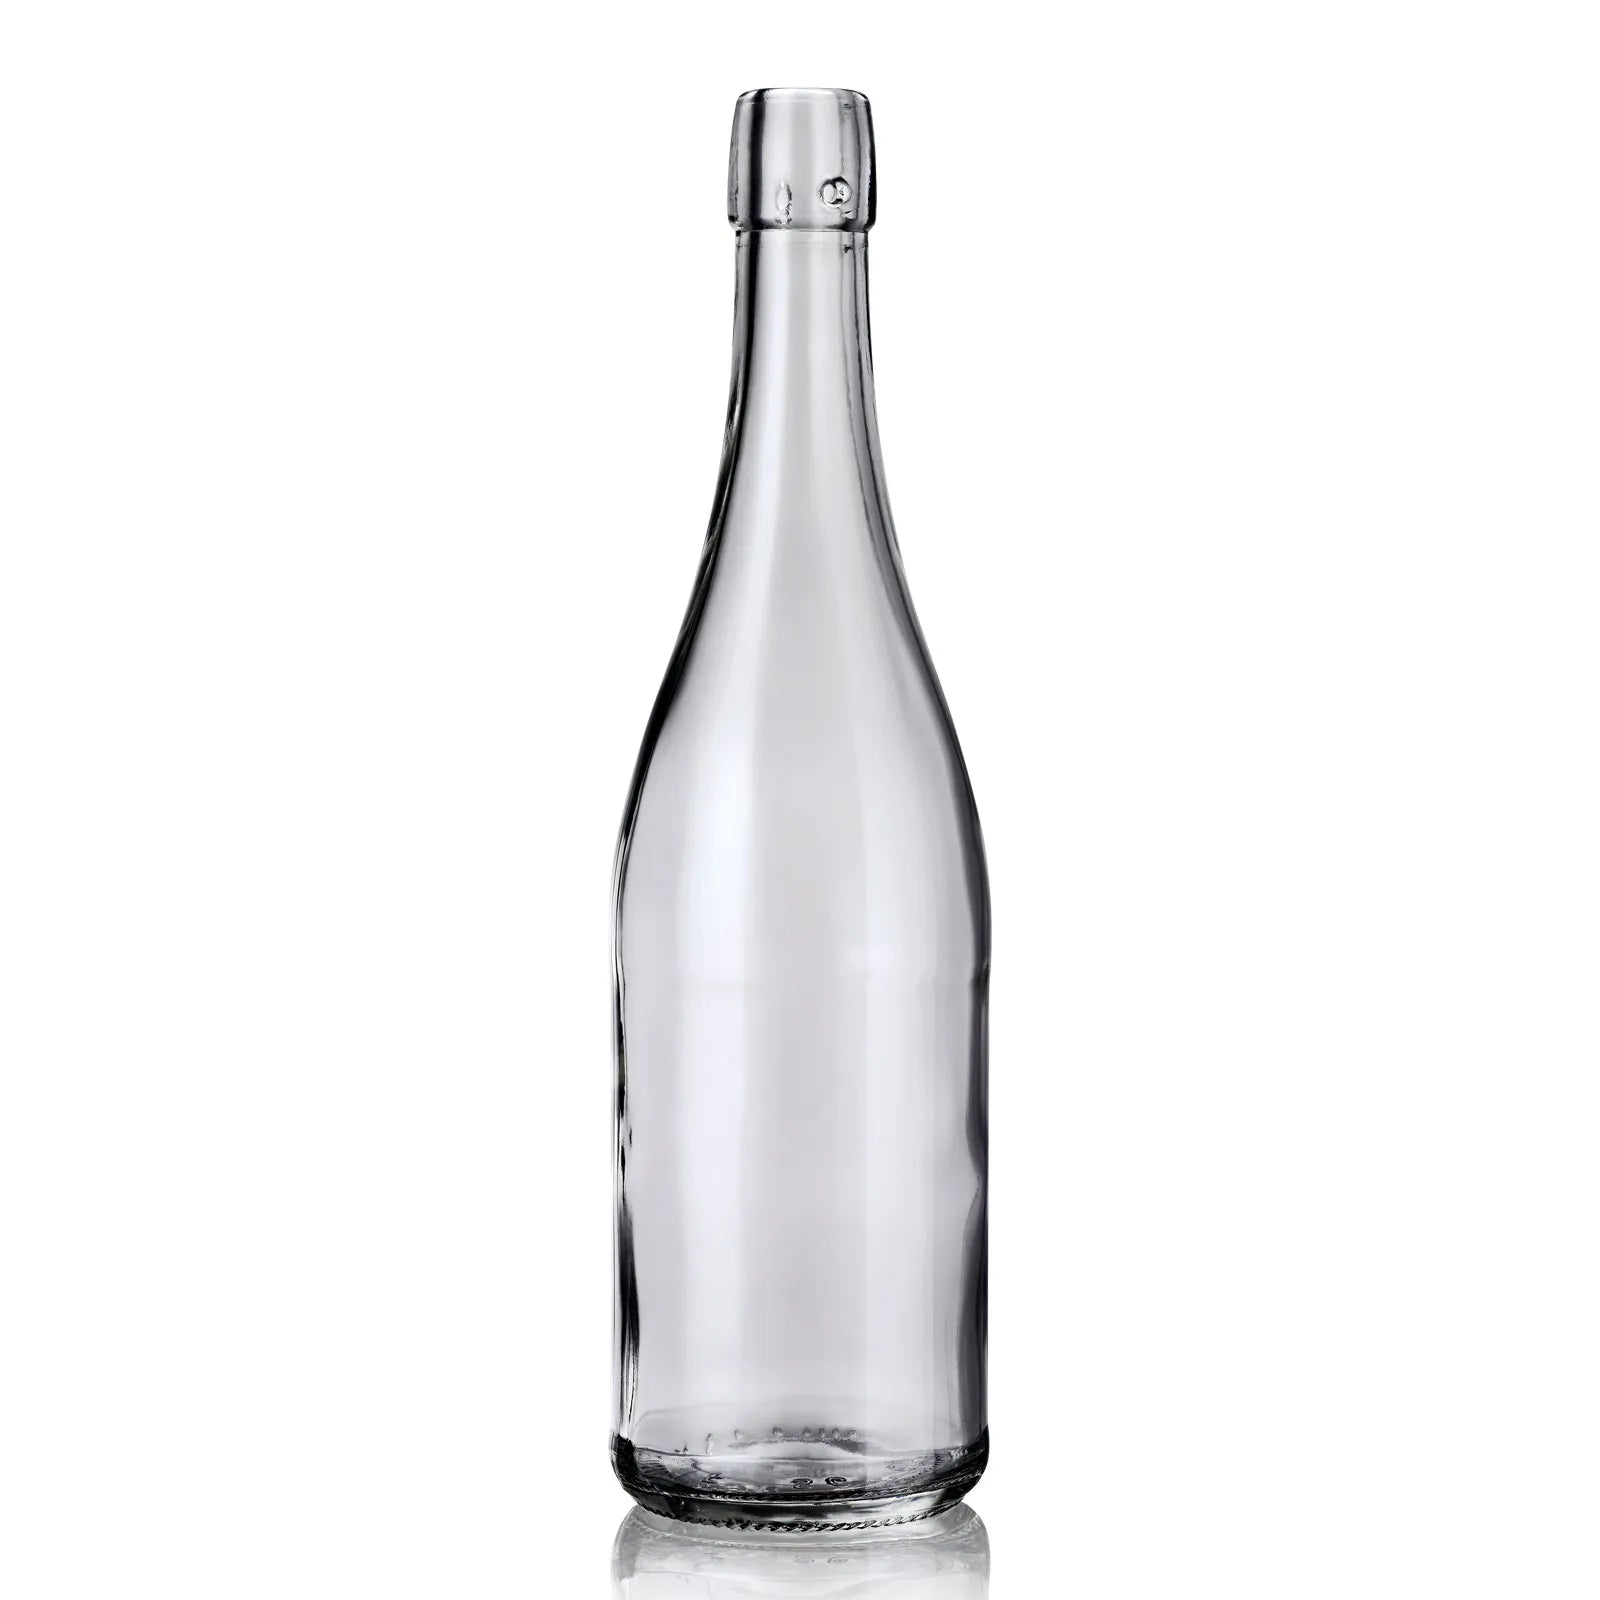 Découvrez notre collection de bouteilles en verre vides